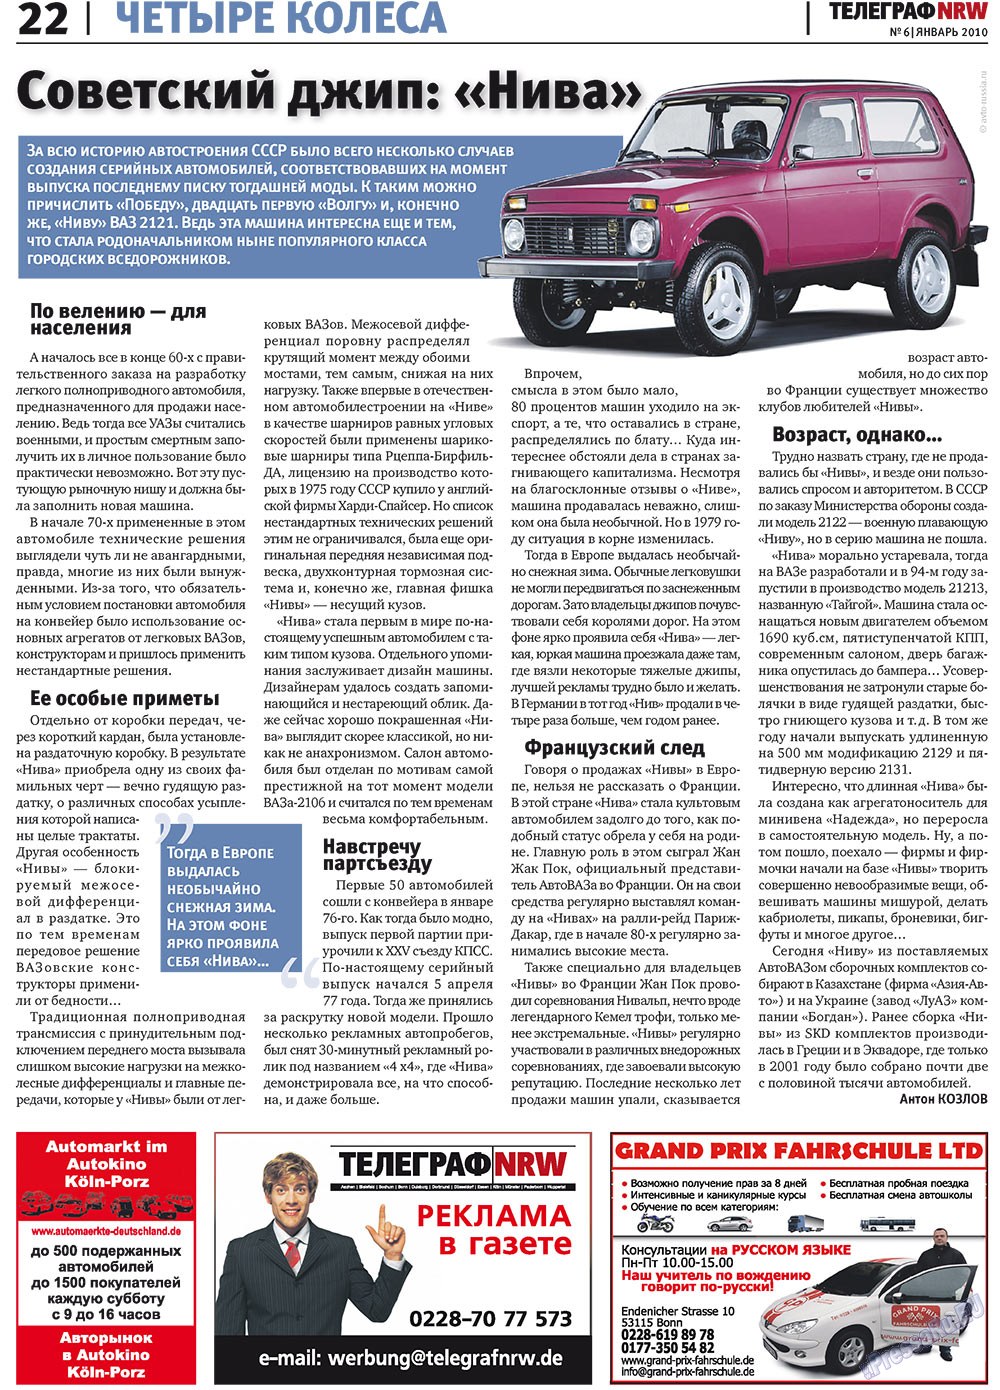 Телеграф NRW (газета). 2010 год, номер 1, стр. 22